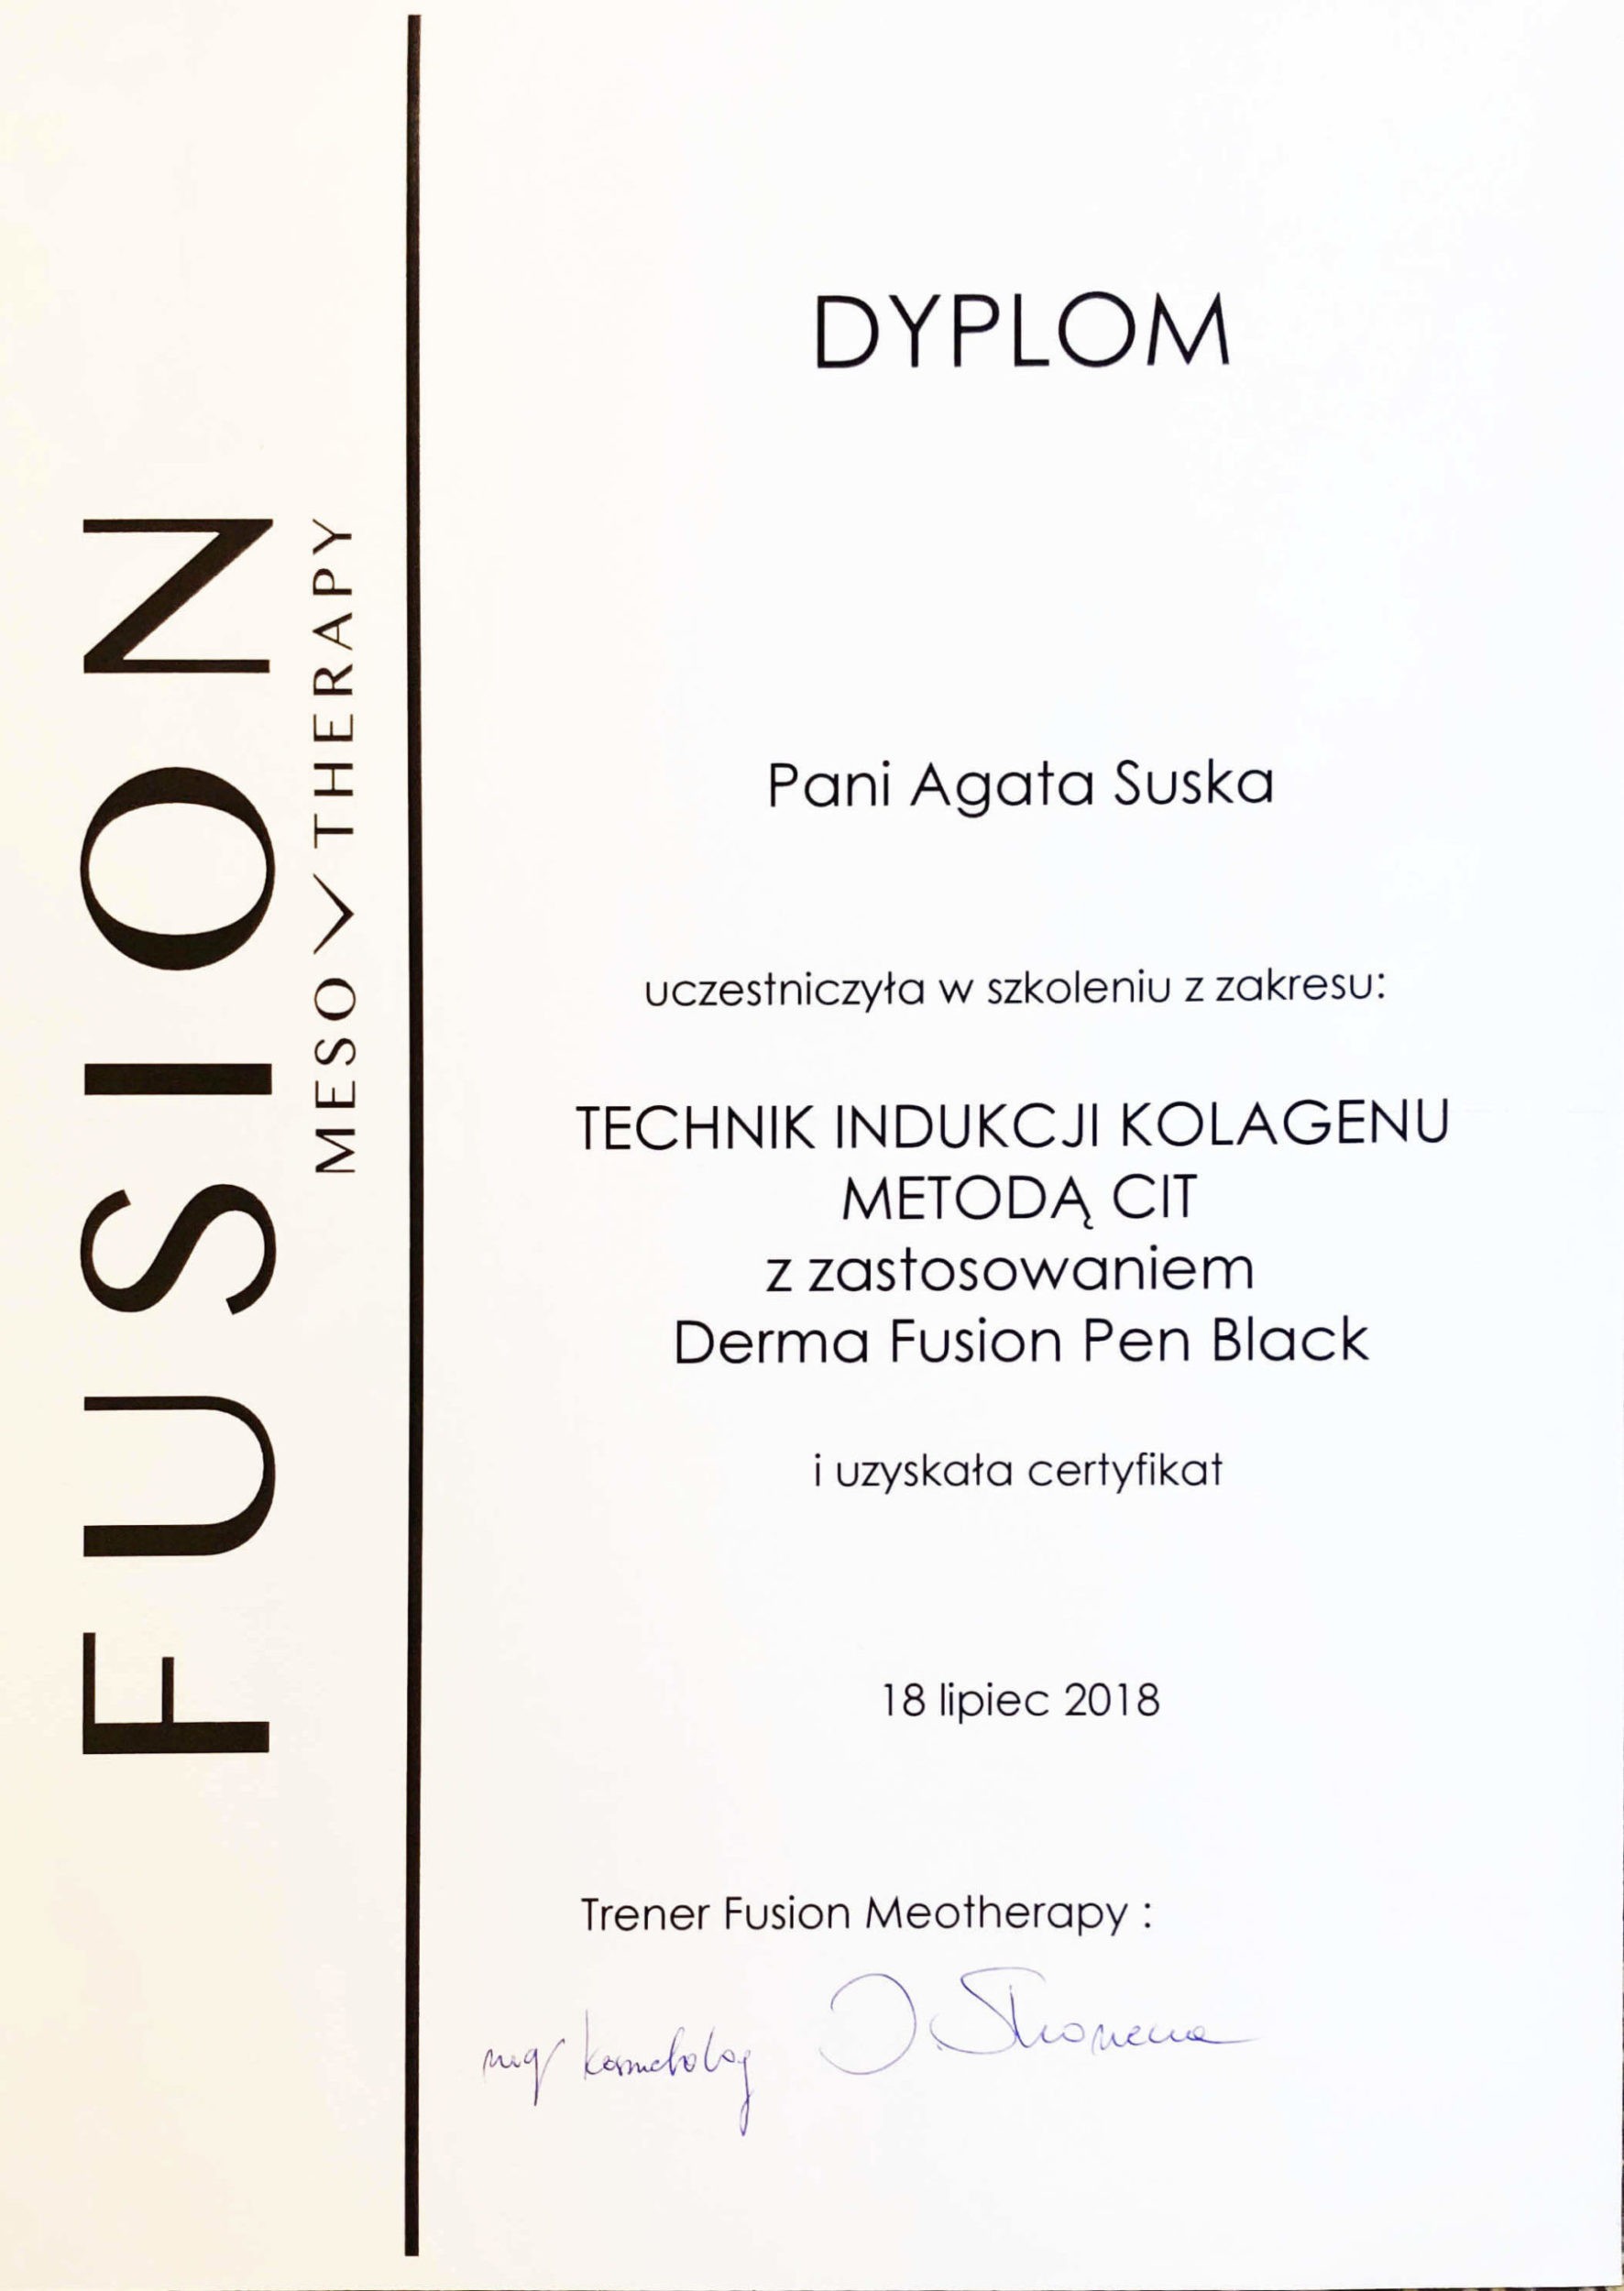 fusion pen black kosmetologia